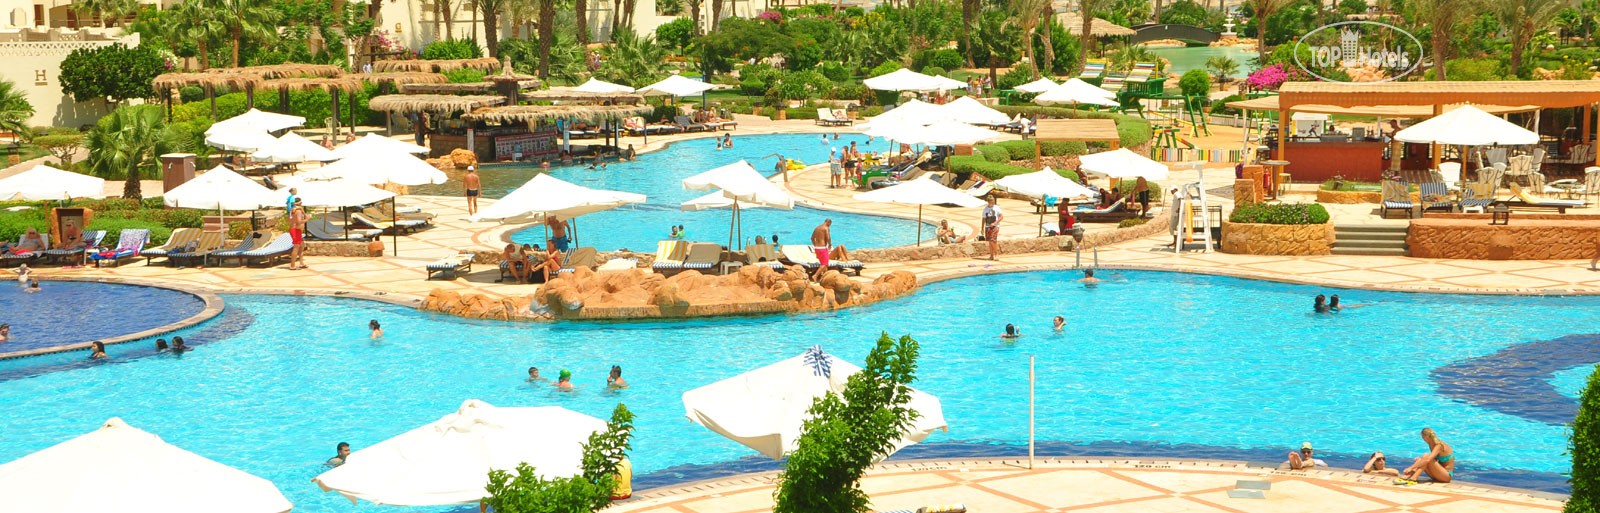 Tours to the hotel Royal Regency Club Sharm El Sheikh Sharm el-Sheikh